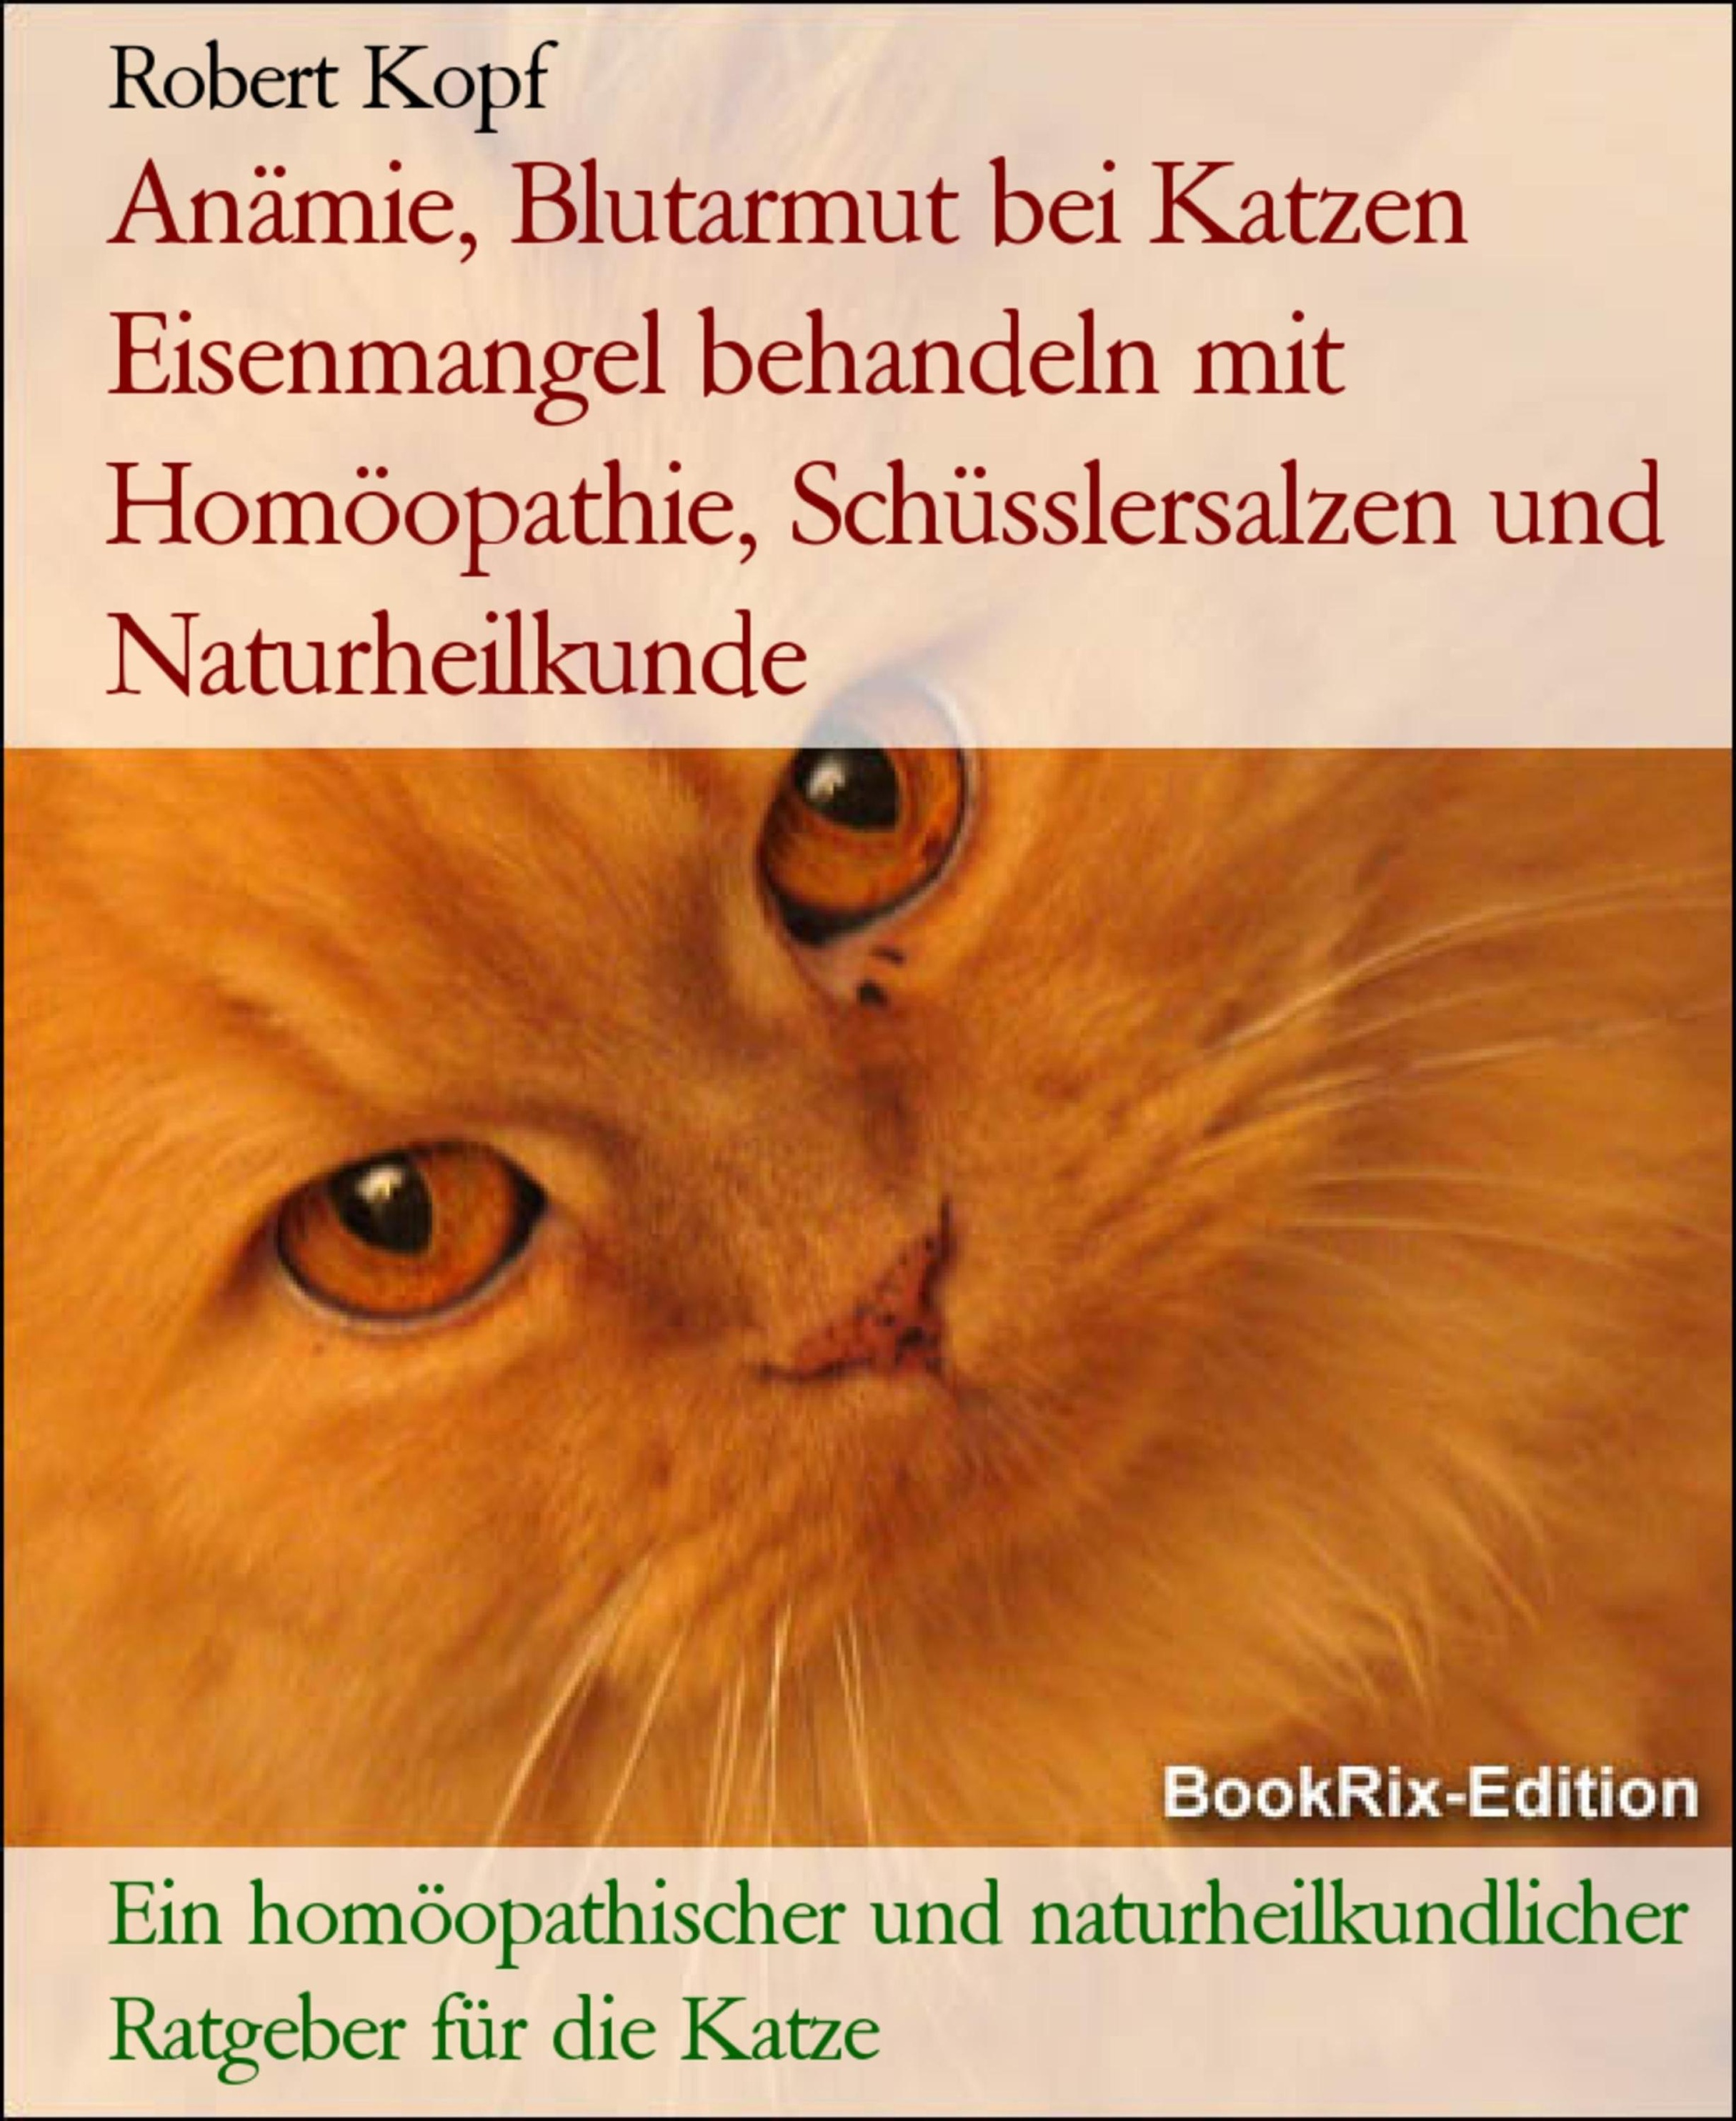 Anämie, Blutarmut bei Katzen Eisenmangel behandeln mit Homöopathie,  Schüsslersalzen und Naturheilkunde eBook v. Robert Kopf | Weltbild